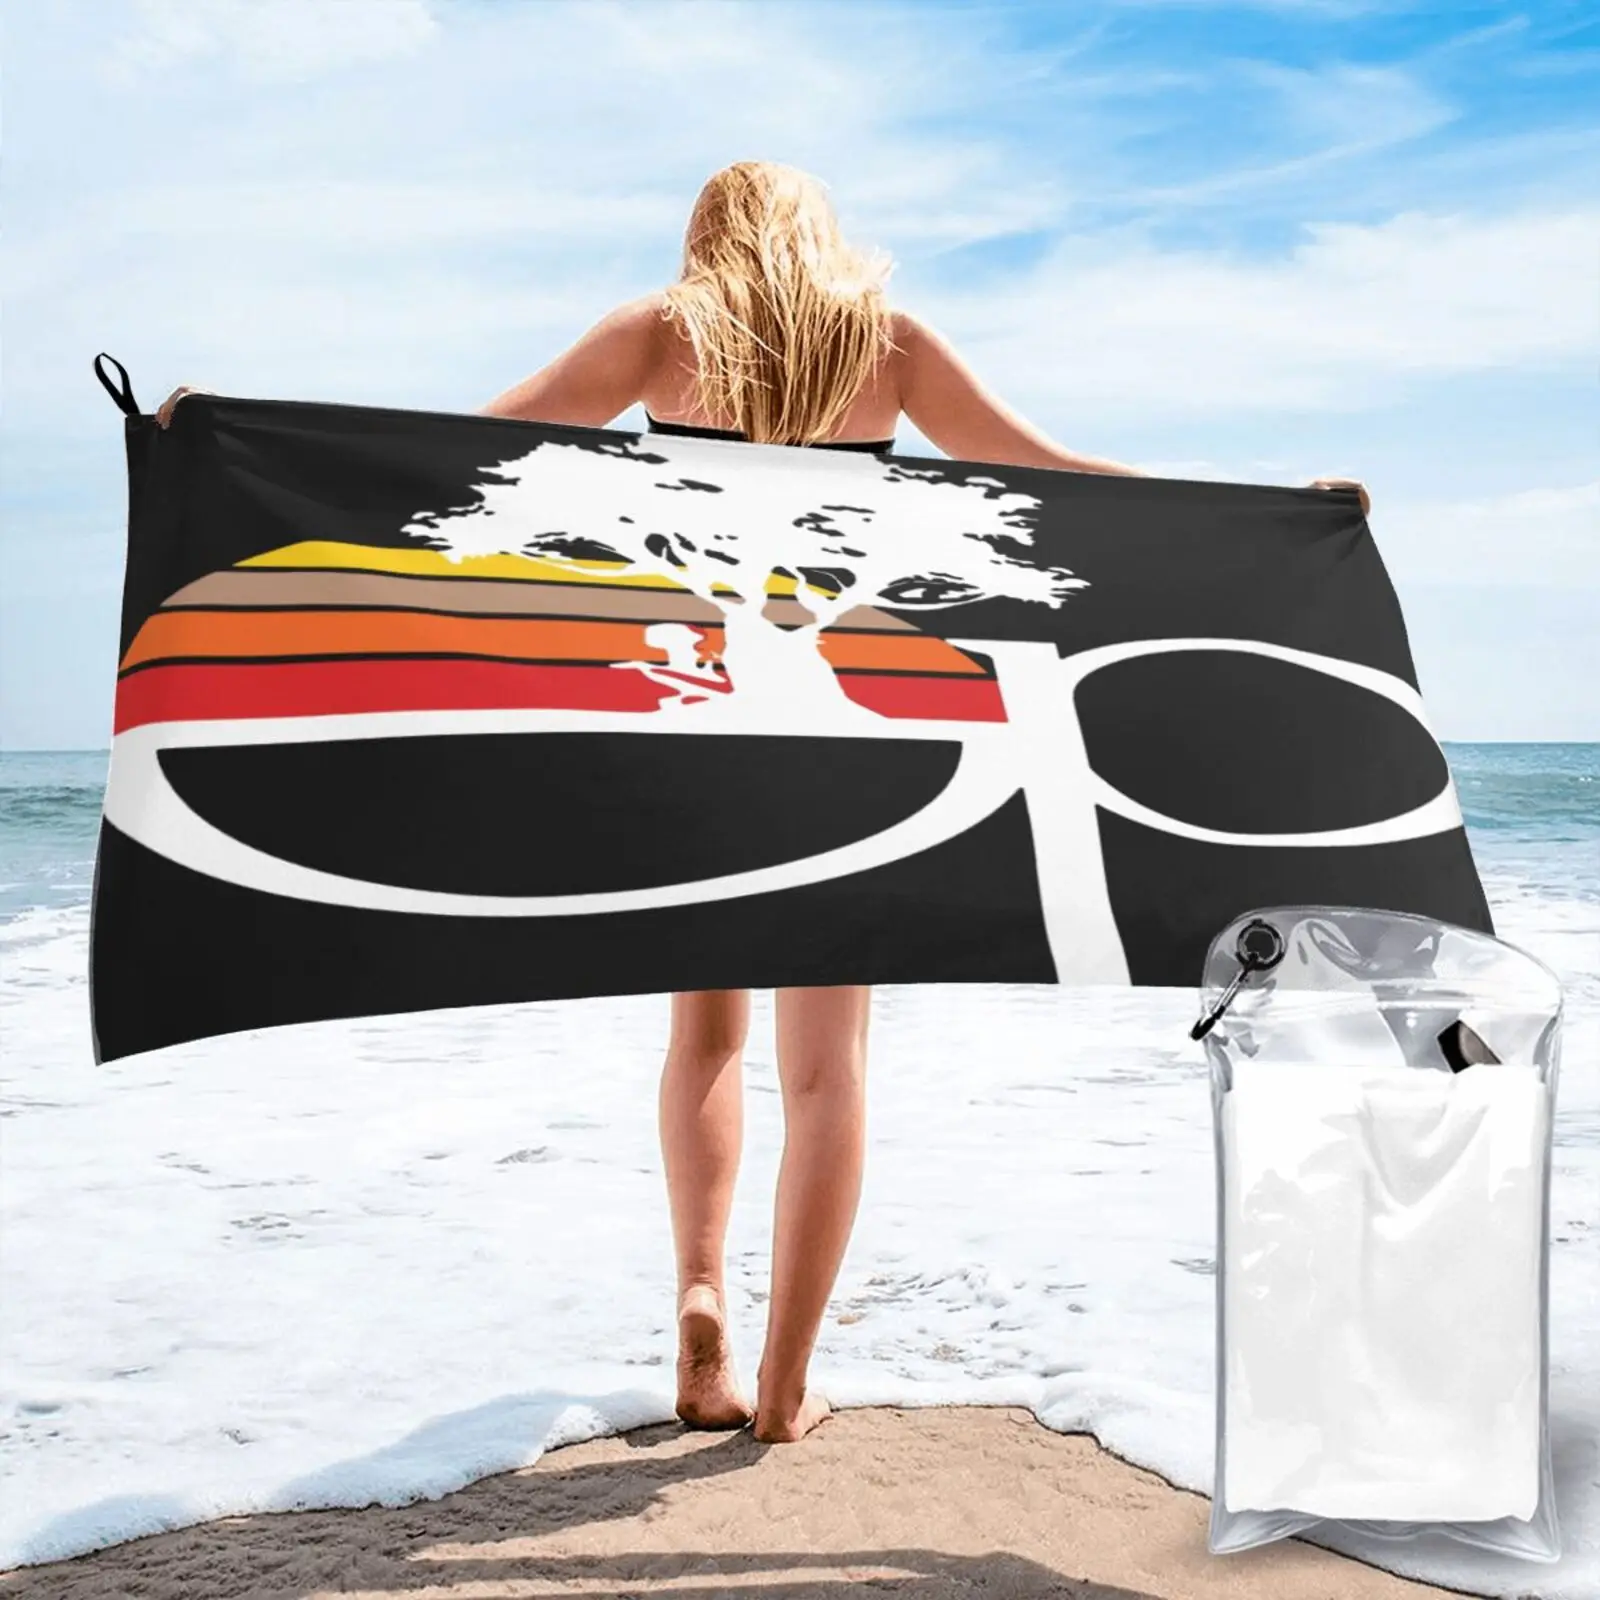 

Морское пляжное полотенце 80S для серфинга, 6645, махровое полотенце, банное полотенце, пляжное полотенце для моря, пляжная одежда, морское пляж...